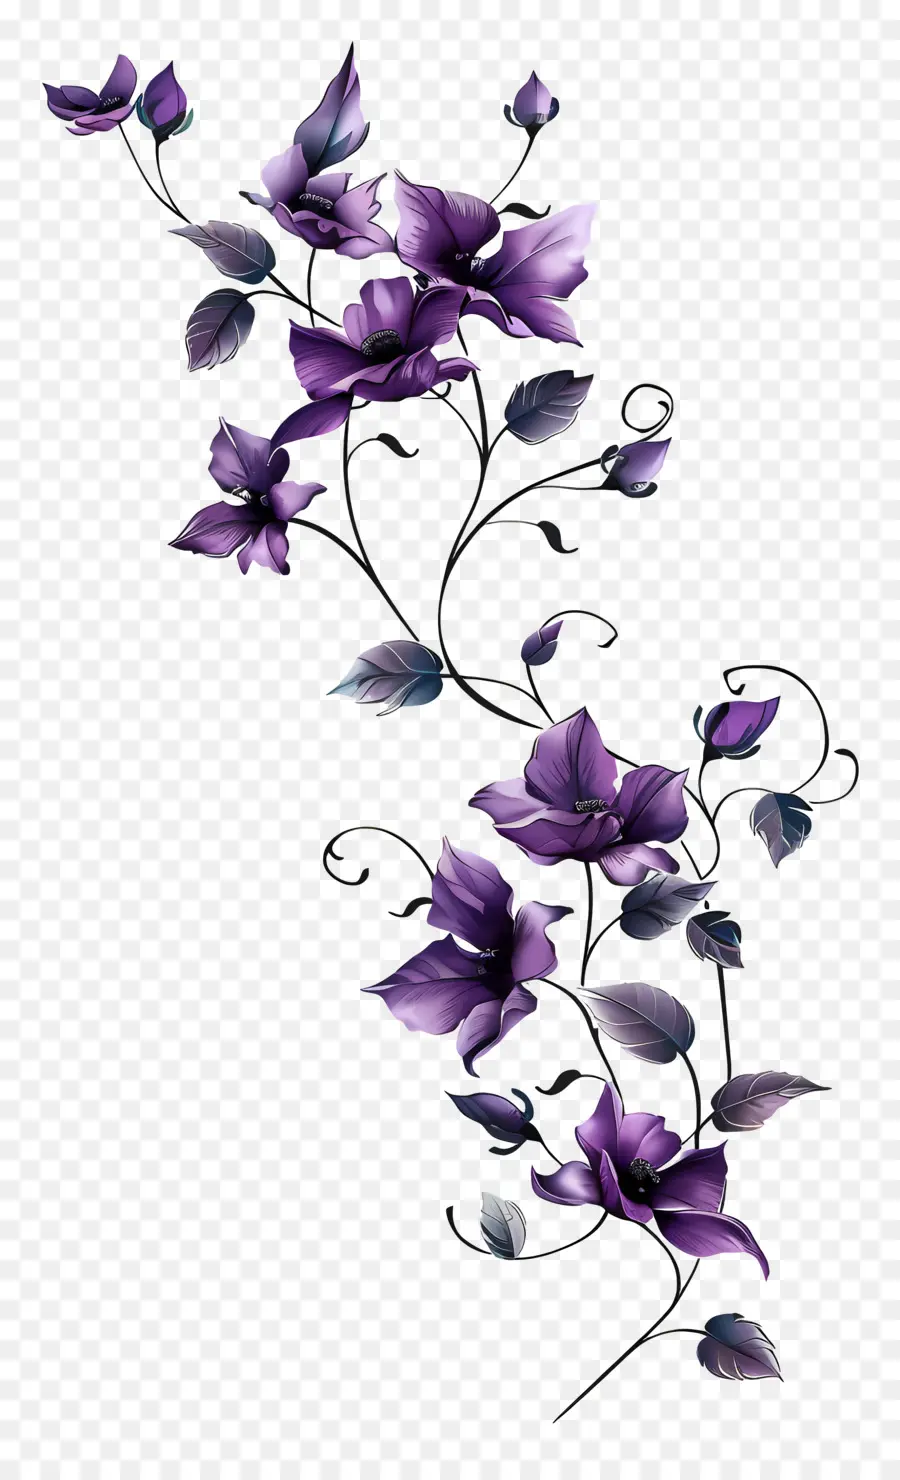 purple flower vine purple flowers bouquet swirling pattern heart-shaped petals